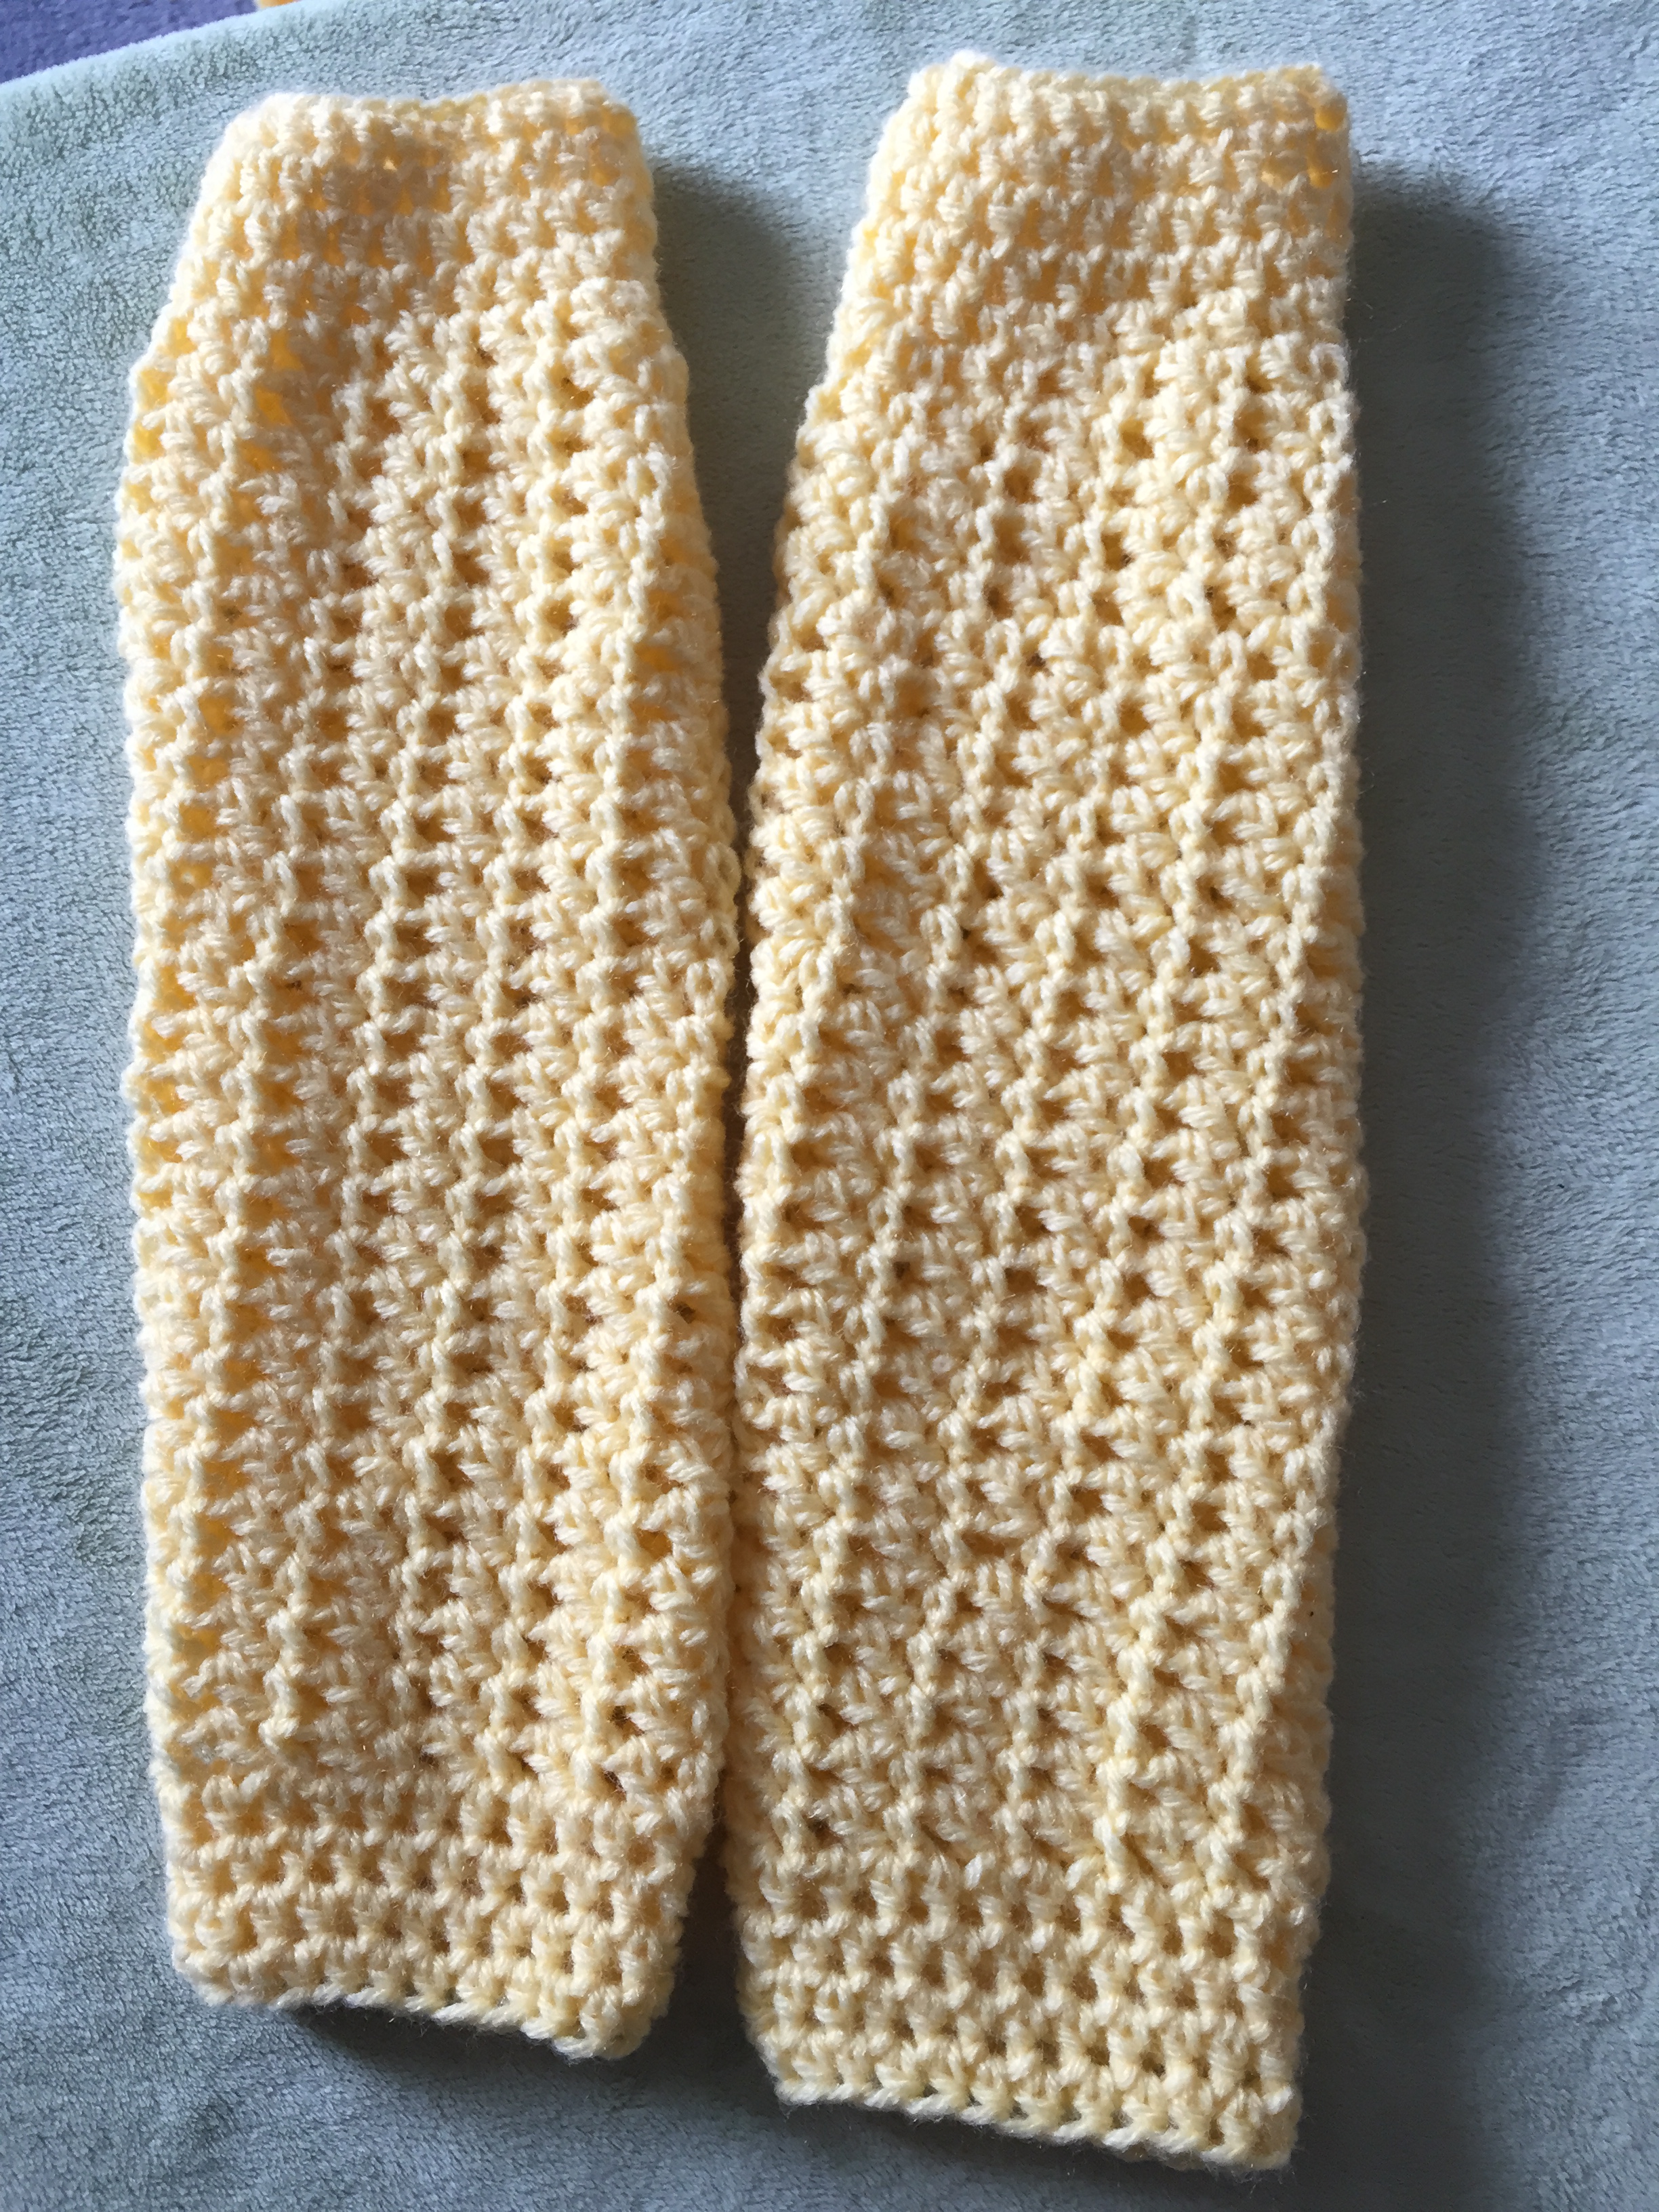 crochet leg warmer patterns free, free crochet leg warmer patterns, easy to follow leg warmer pattern, step by step leg warmer pattern for beginners, crochet leg warmer tutorial